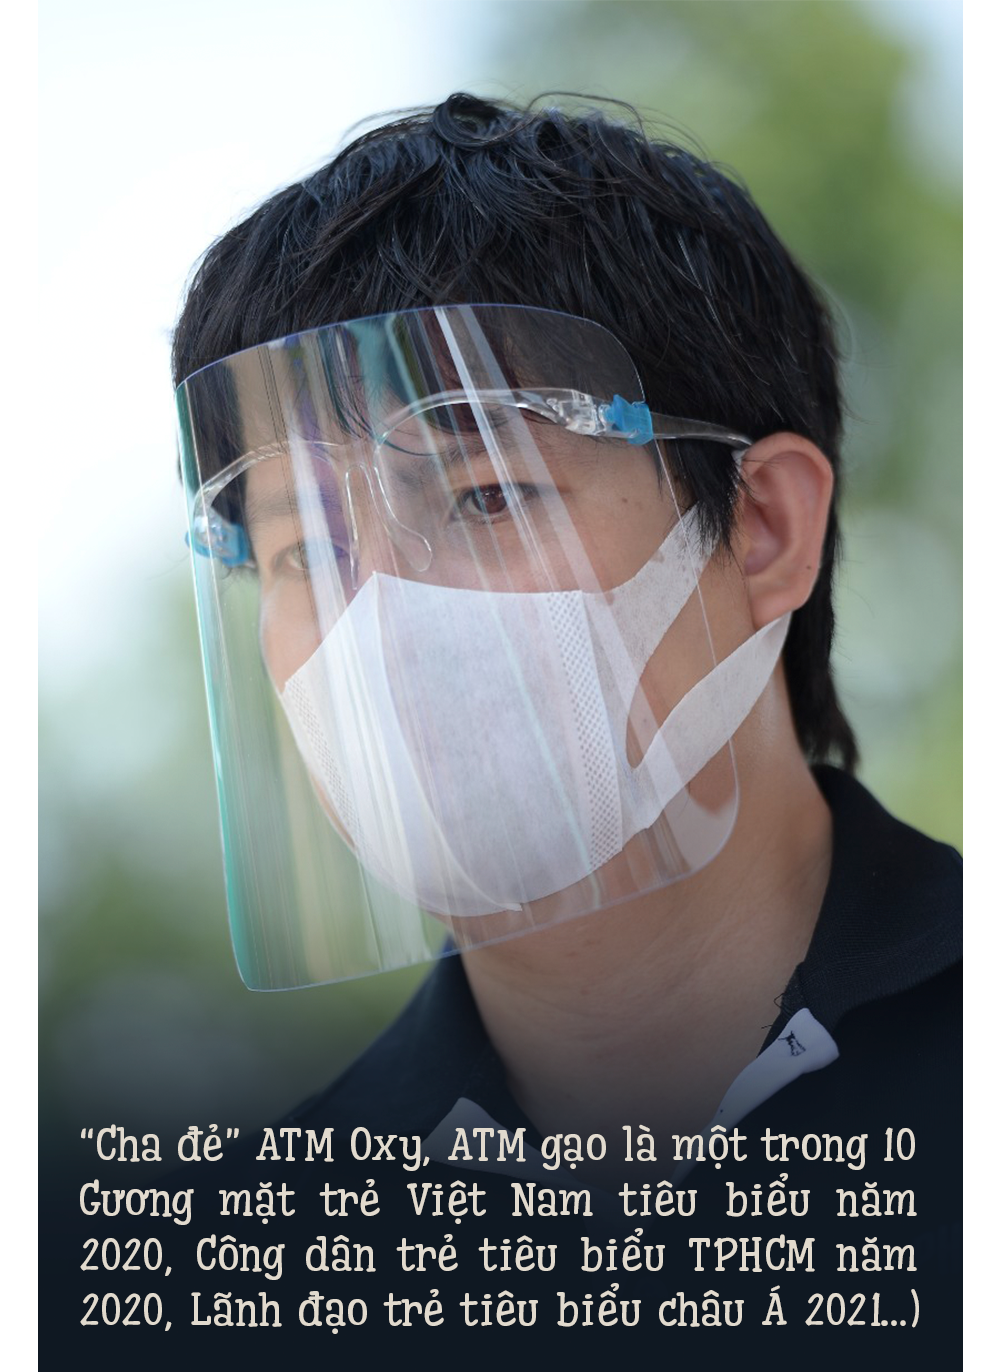 Bí mật về một hậu phương bỏ tất cả, tới Việt Nam để yêu cha đẻ ATM Oxy - 2